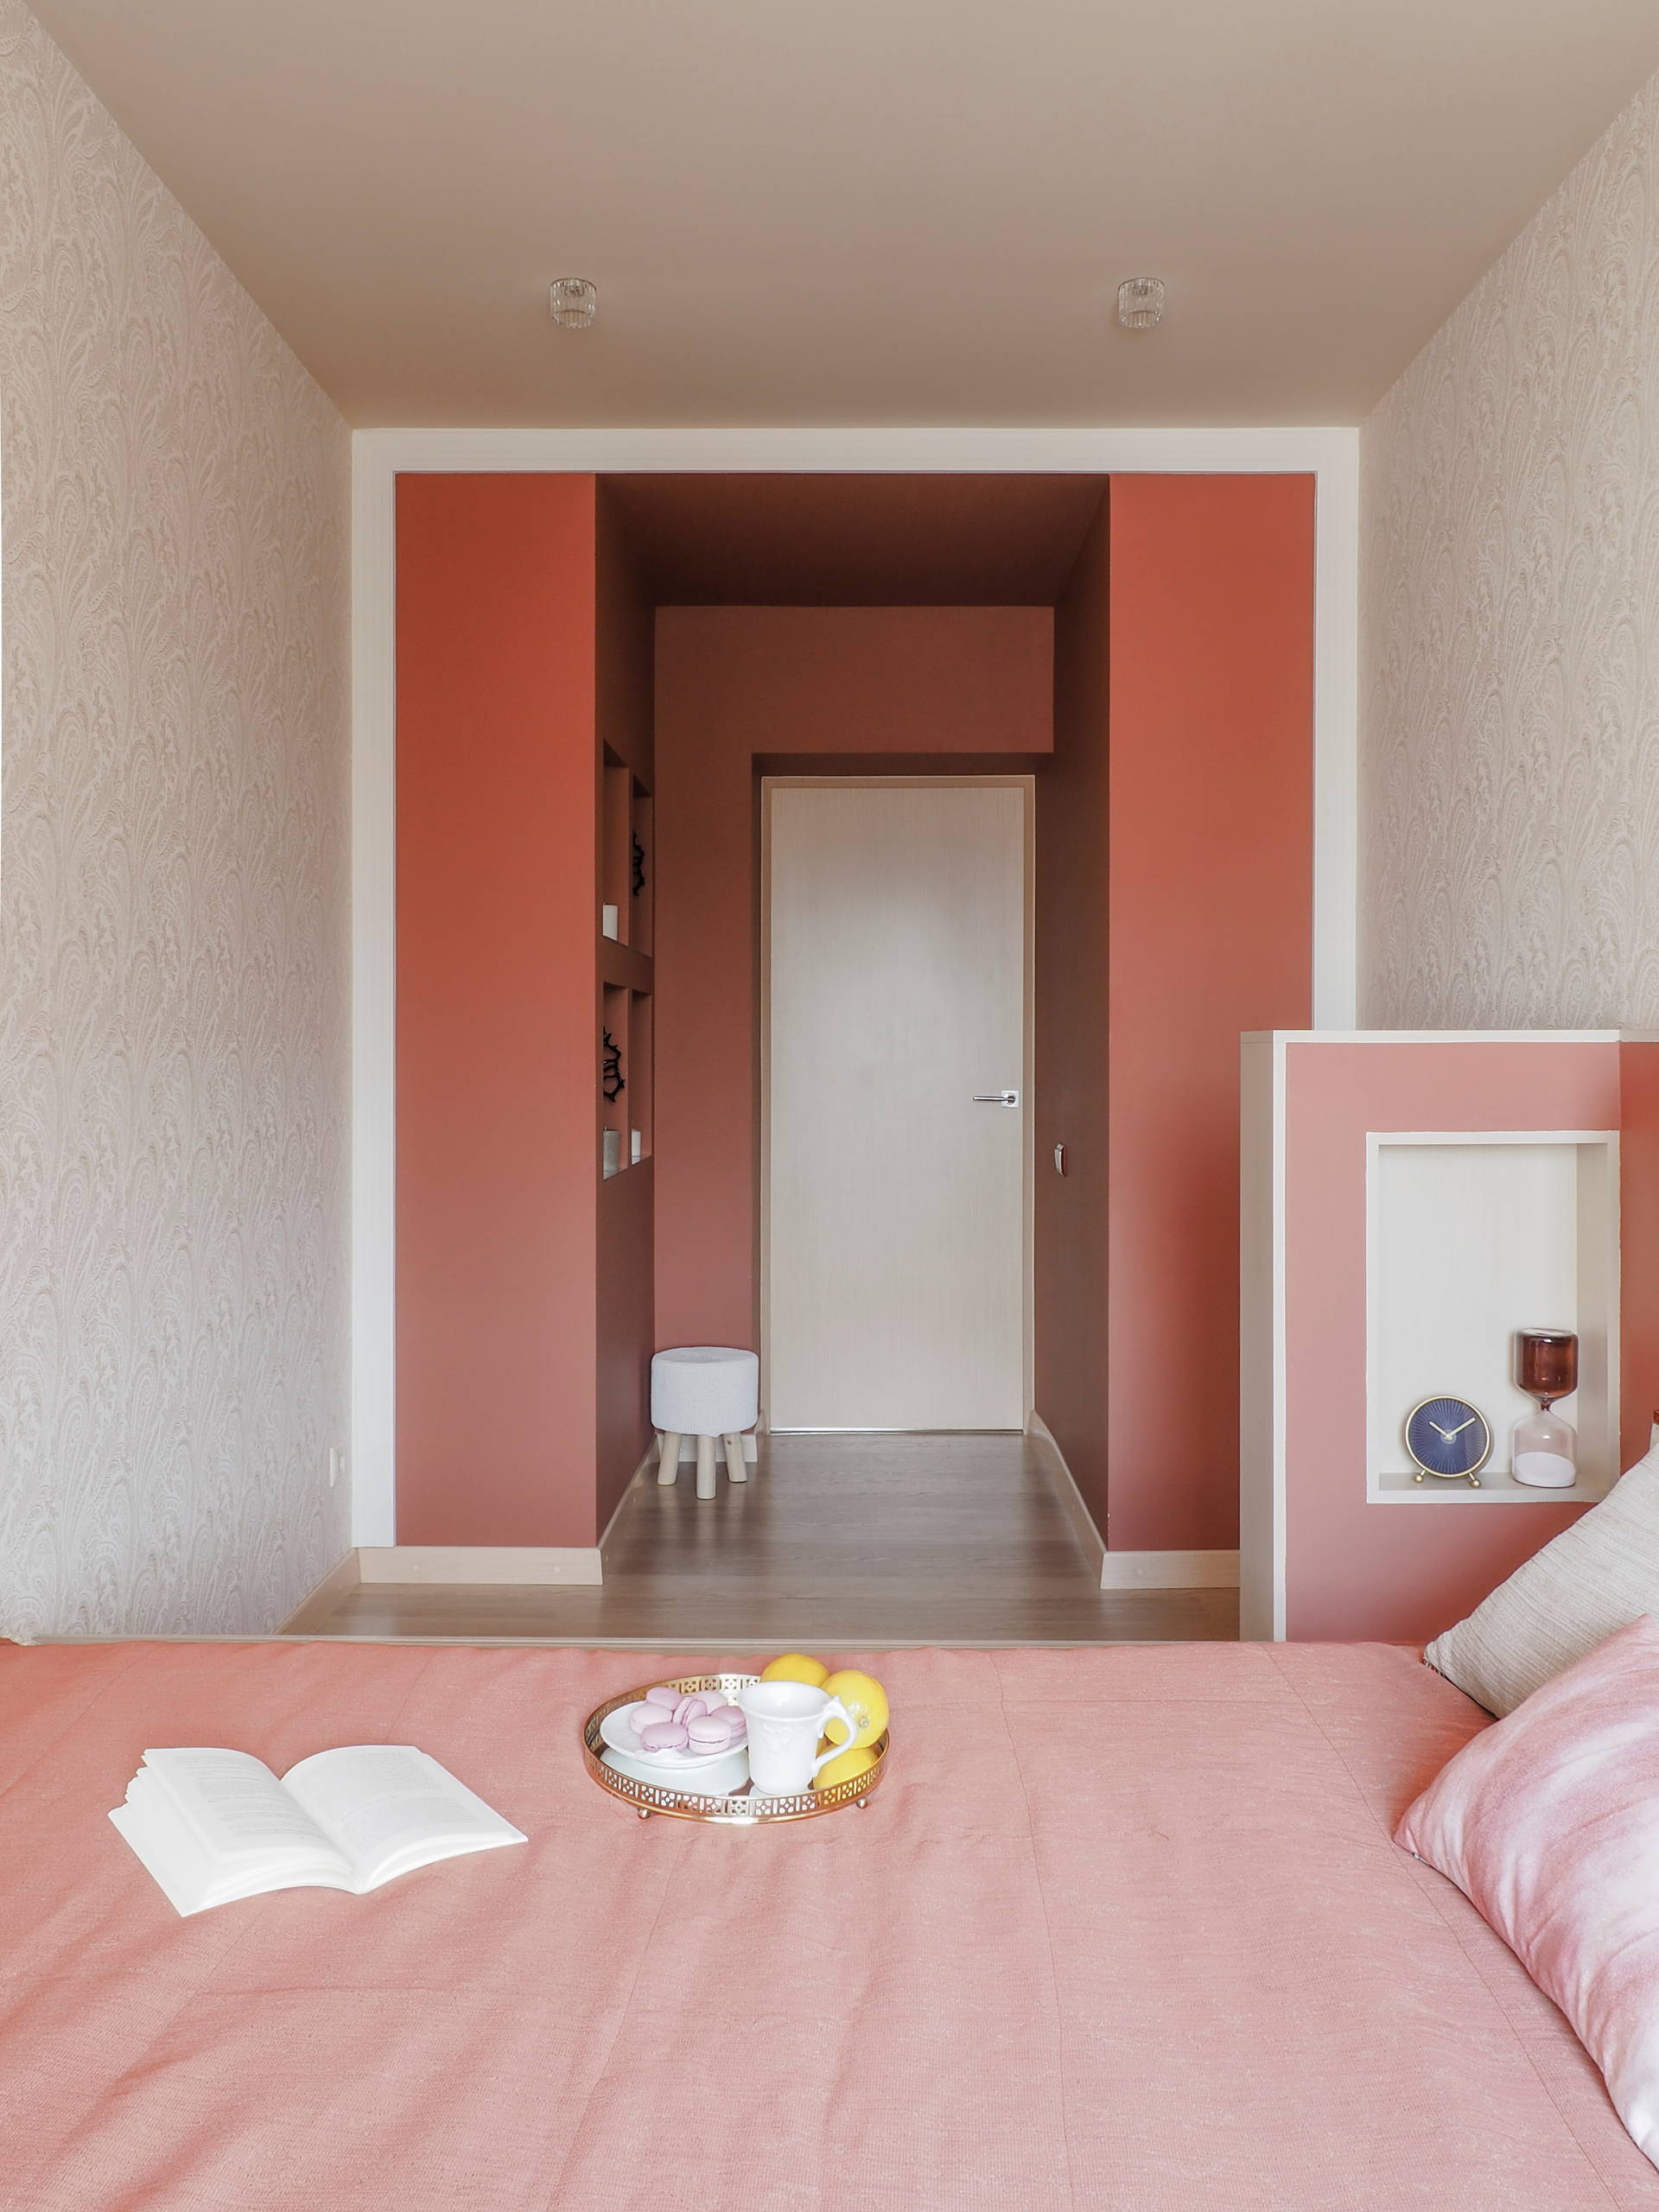 Спальня: дизайн интерьера, освещение, выбор цвета